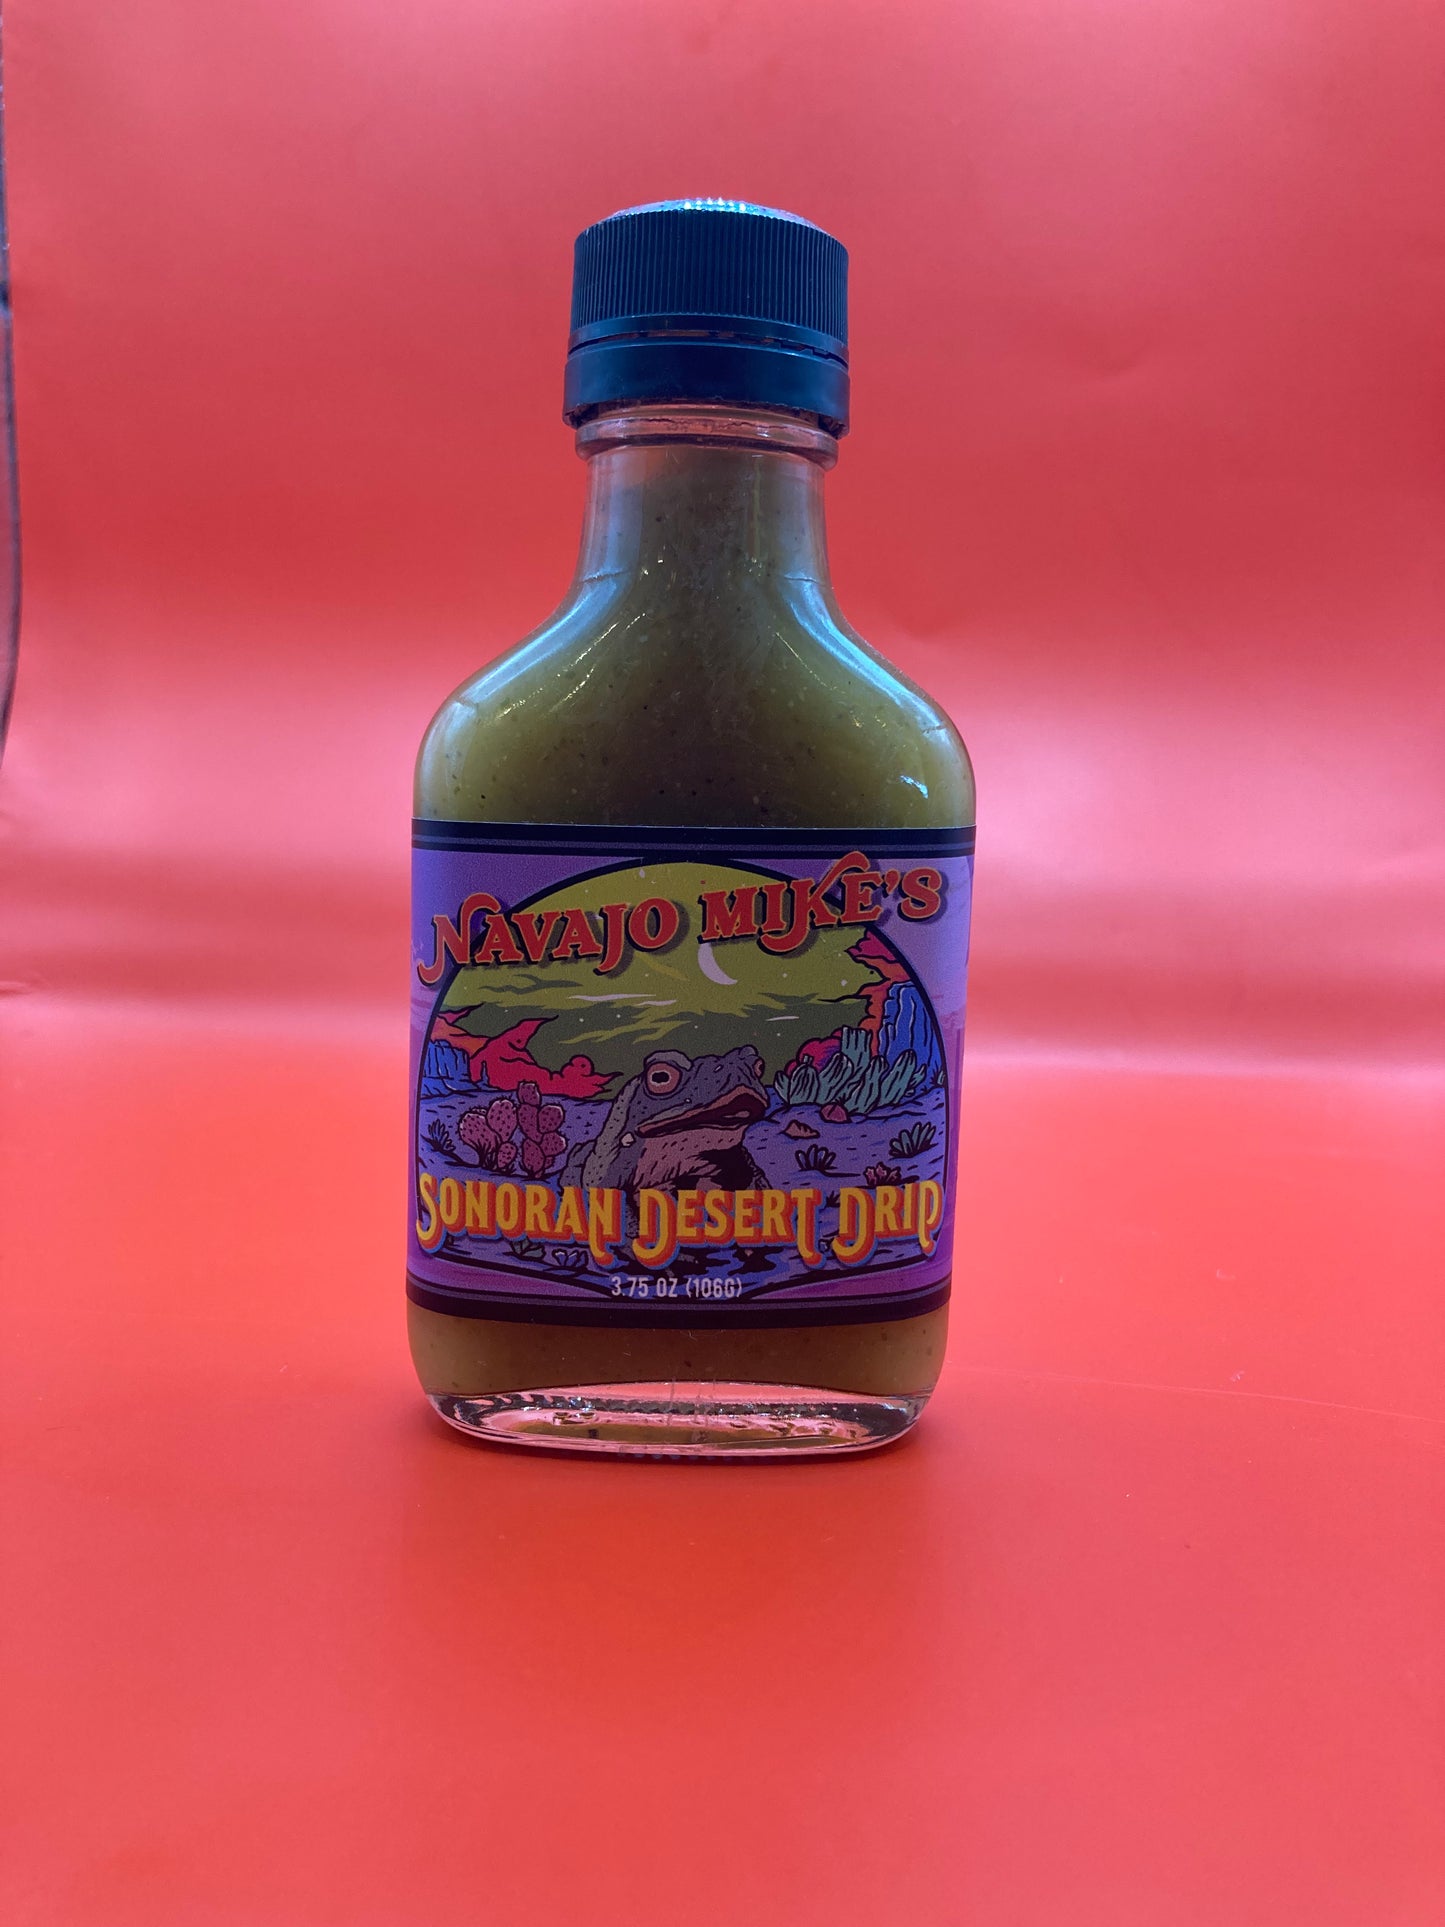 Navajo Mike's Sonoran Desert Drip Hot Sauce